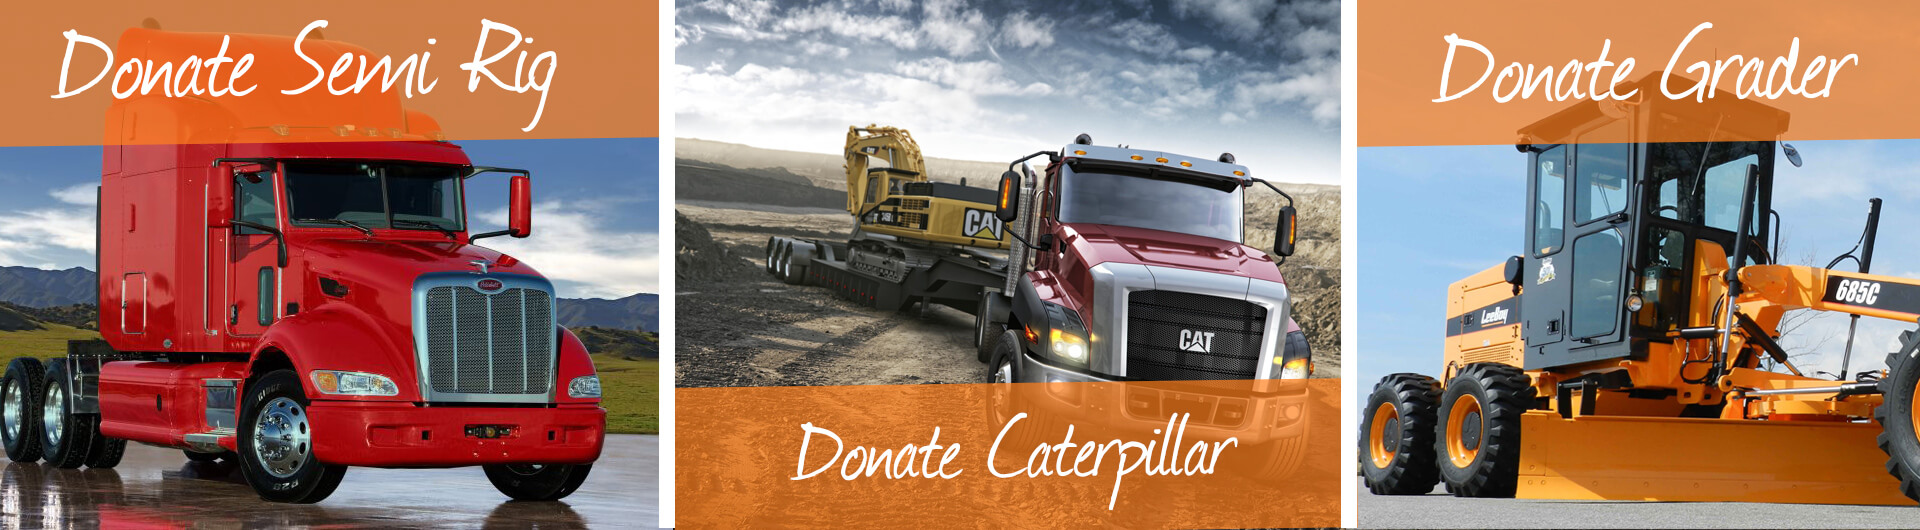 Donate Semi Truck, Caterpillar, Grader Banner